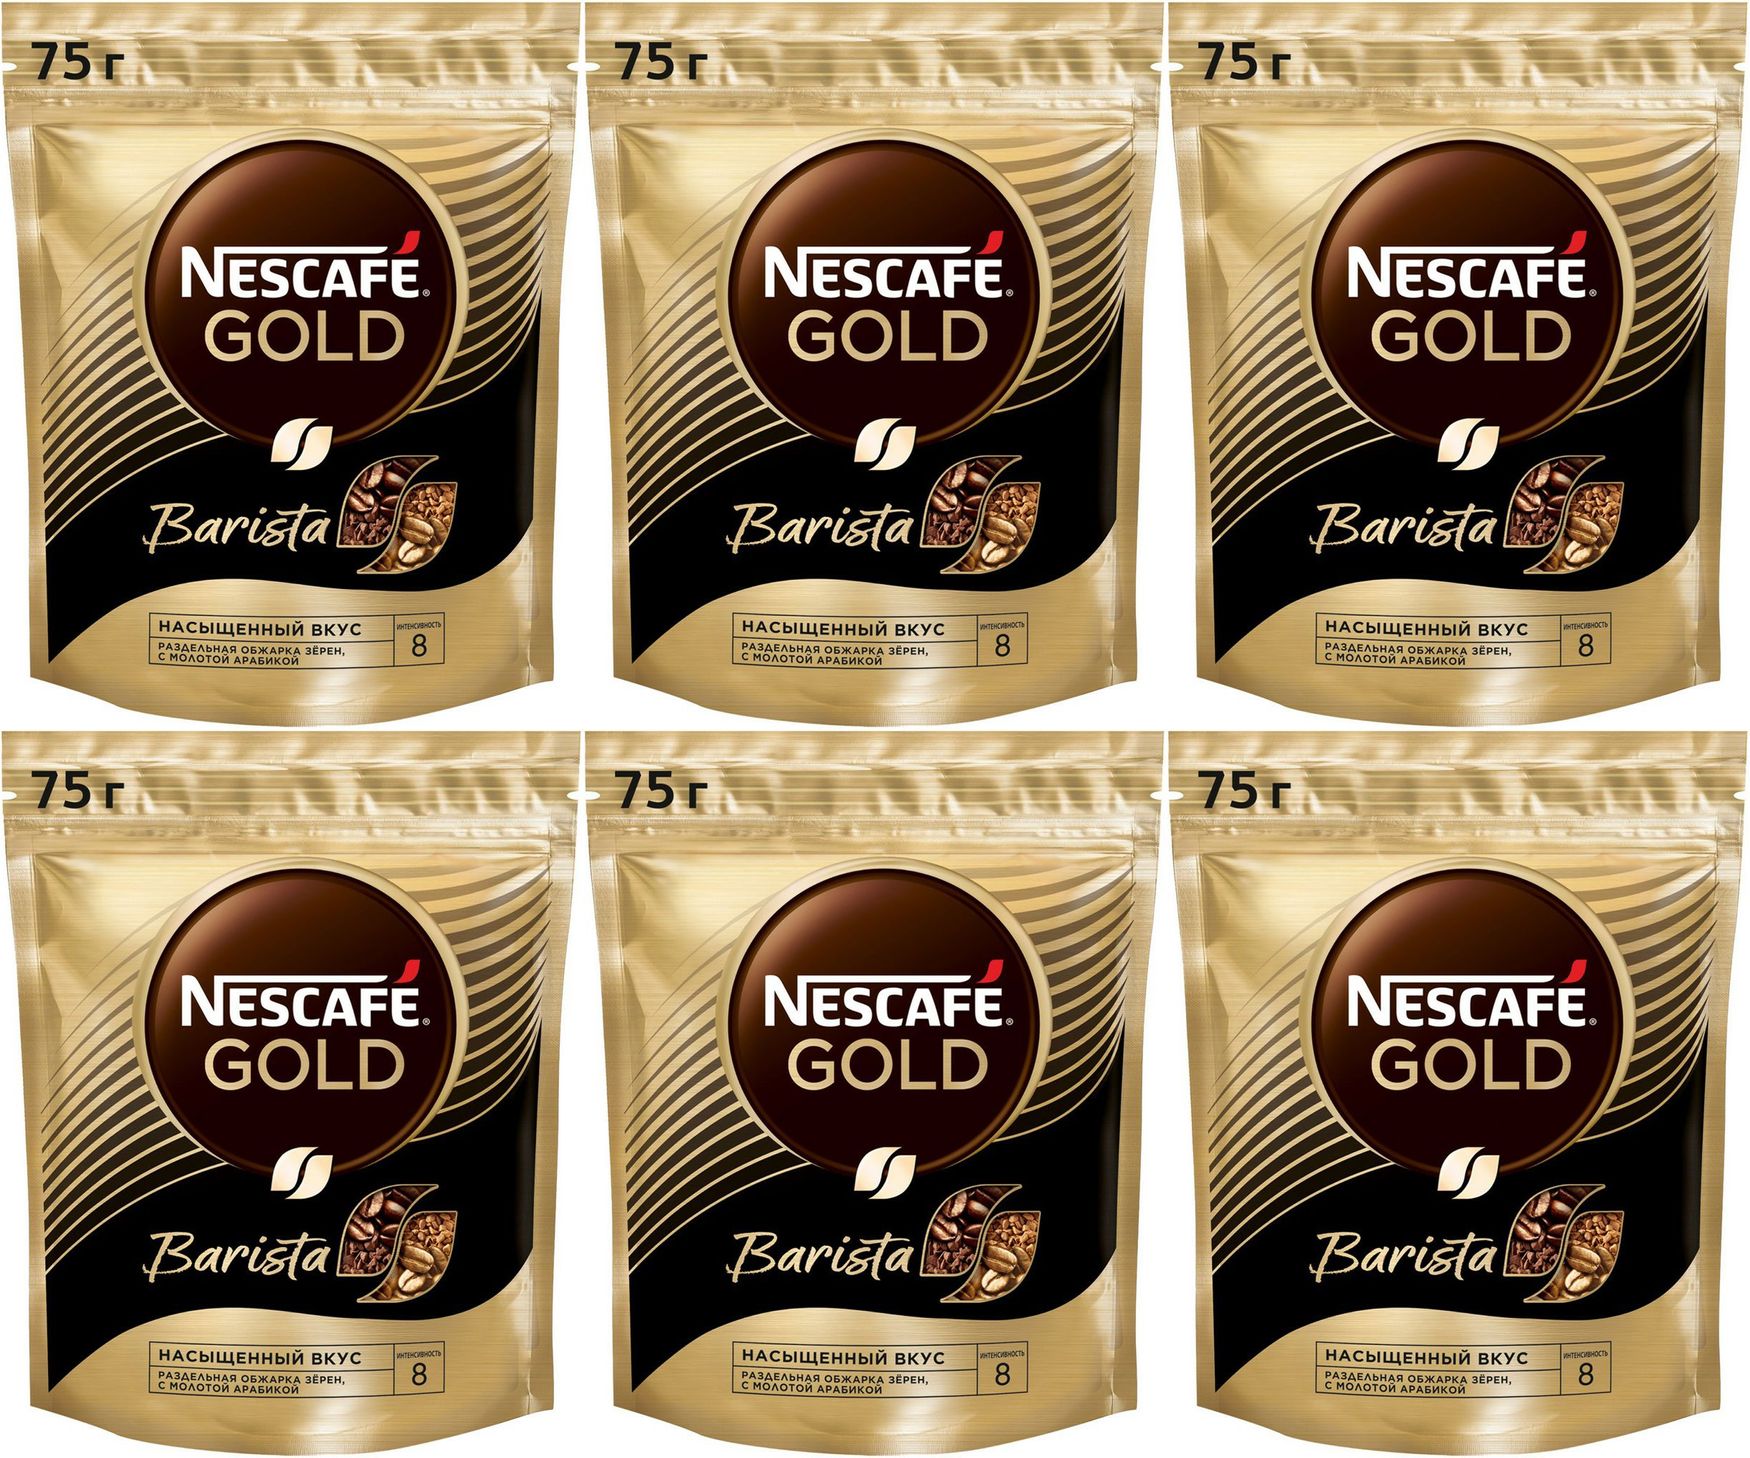 Кофе Nescafe Gold растворимый, 75г. Кофе Нескафе Голд 75гр бариста/стайл пакет. Нескафе Голд растворимый в пакетиках. Кофе Nescafe Gold Barista с кружкой. Бариста растворимый